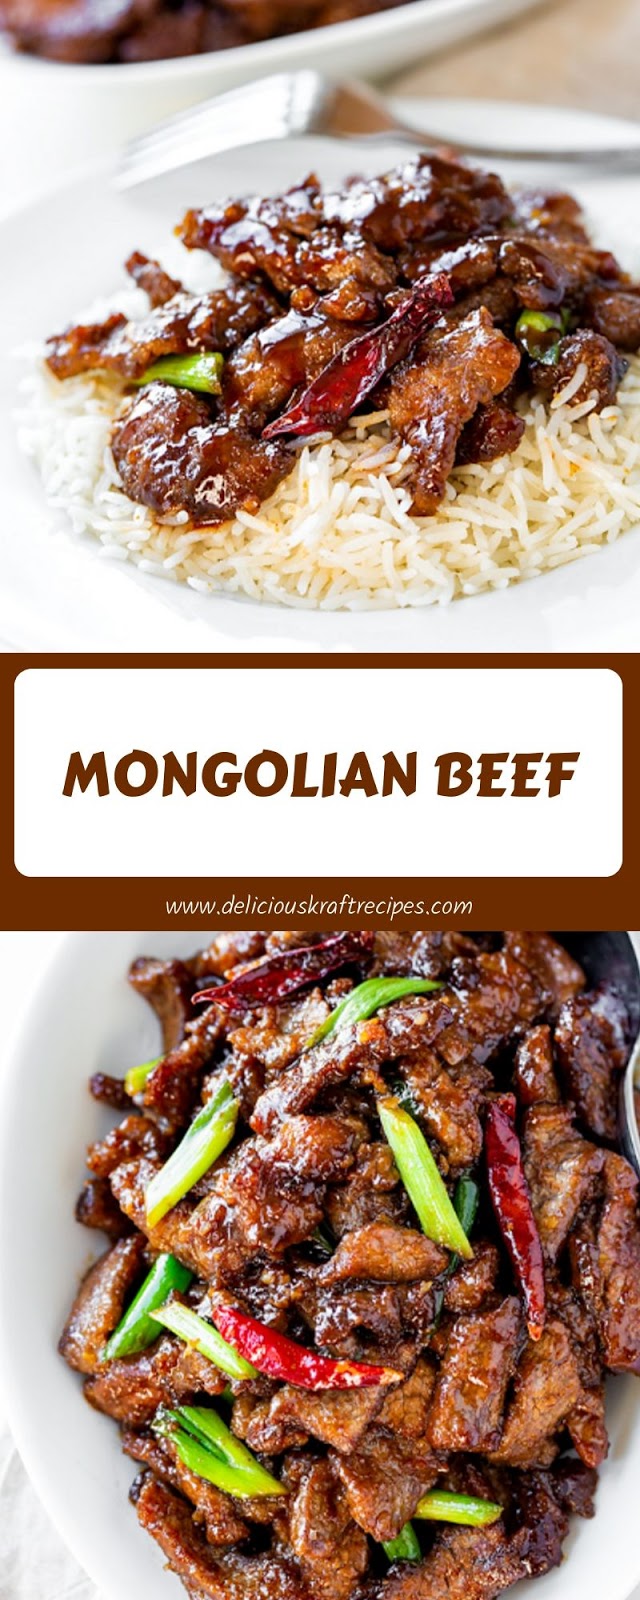 MONGOLIAN BEEF